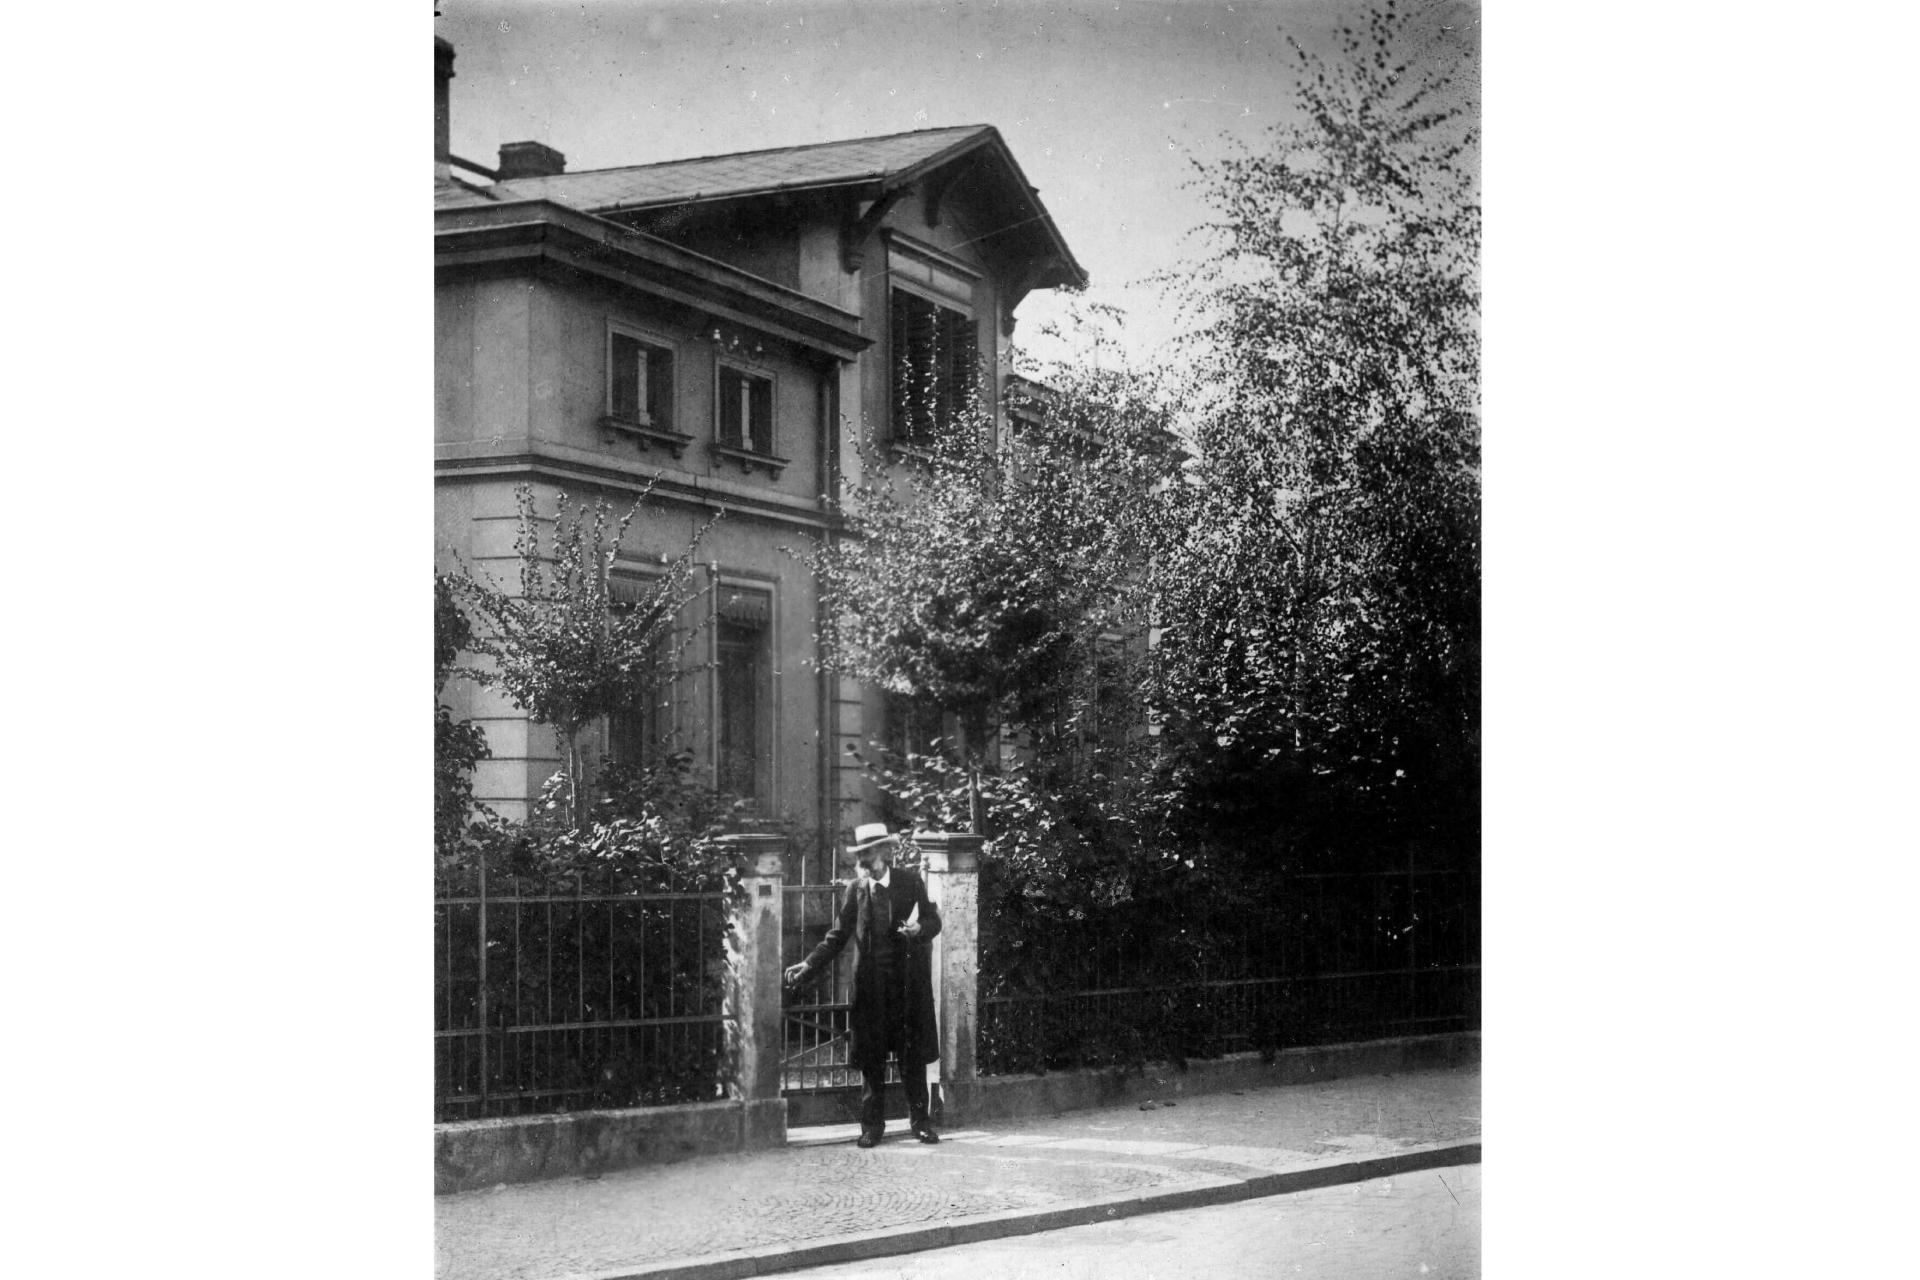 Abbe mit Strohhut am Gartentor seines Hauses um 1900.